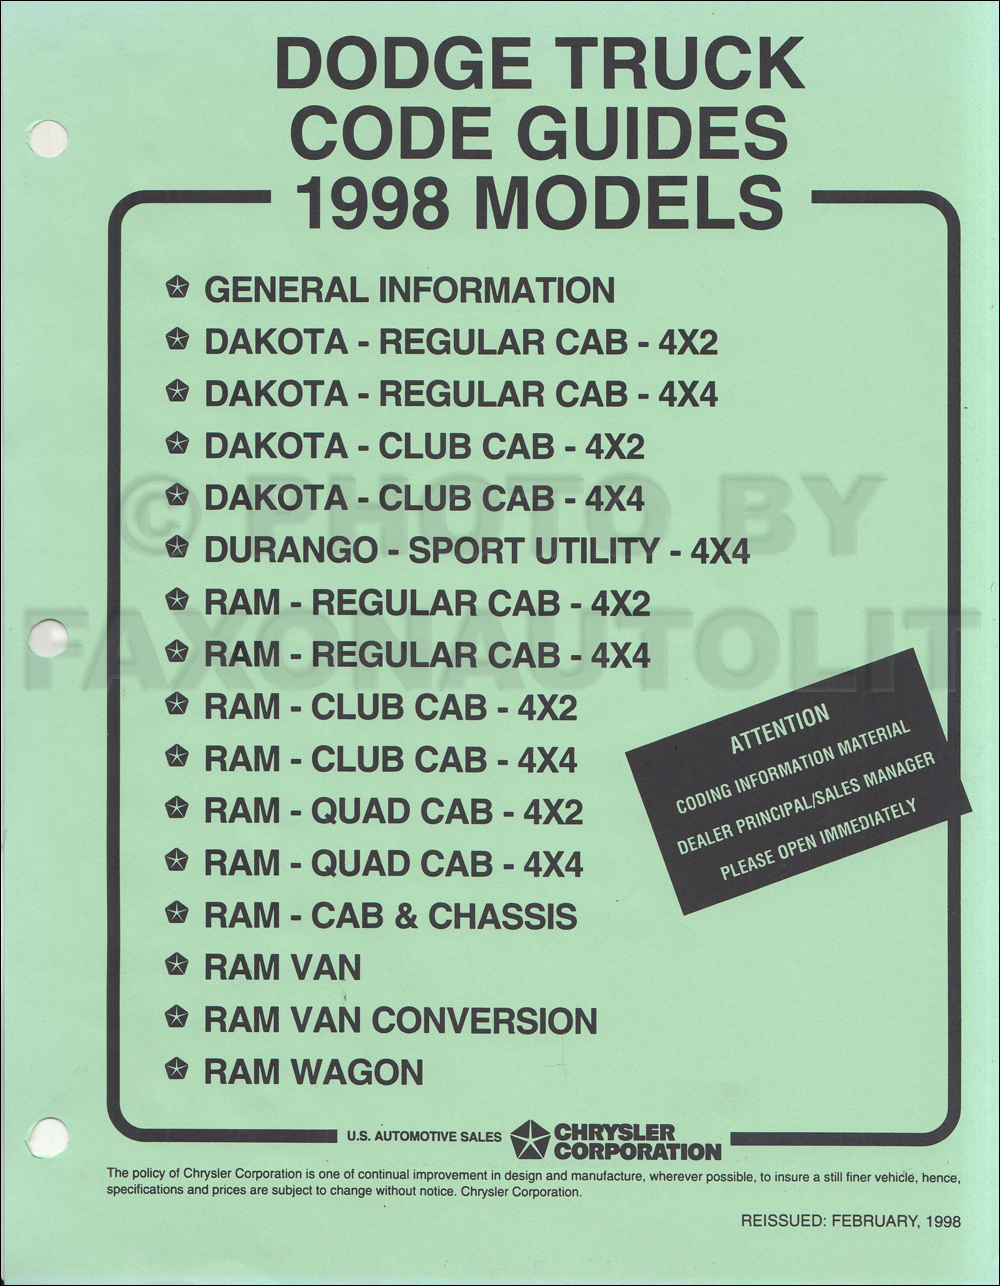 1998 Dodge Truck Ordering Code Guide Original